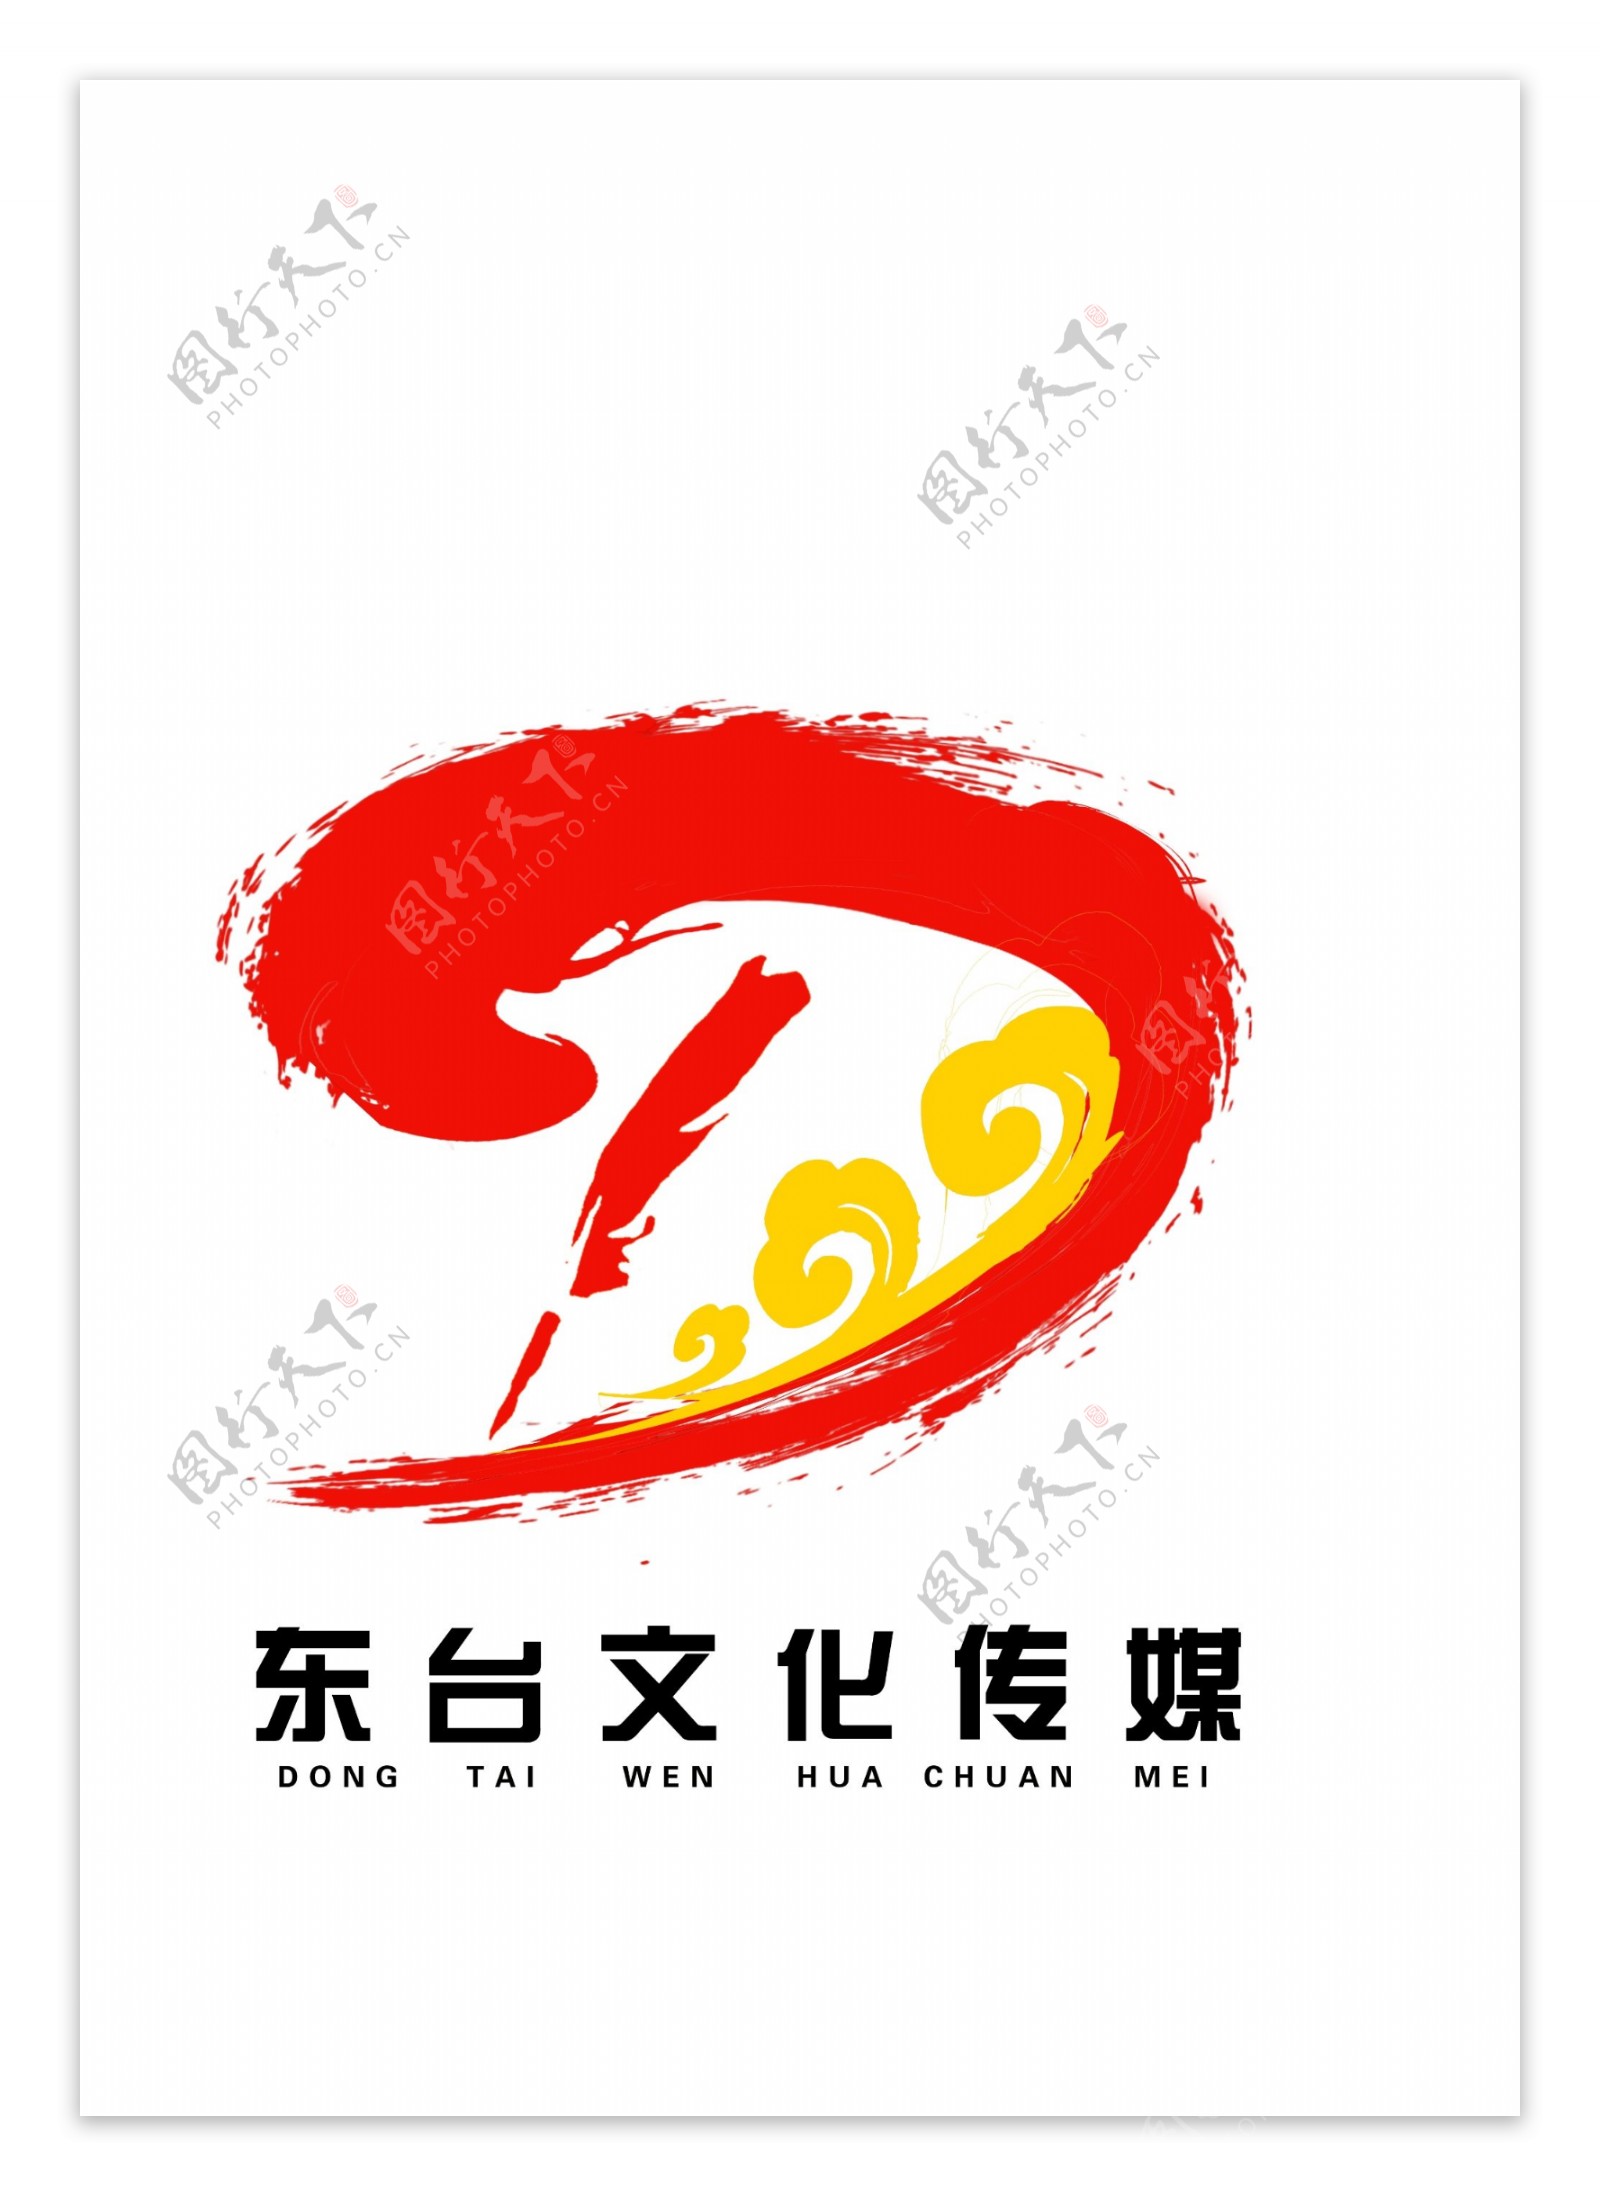 文化传媒公司logo